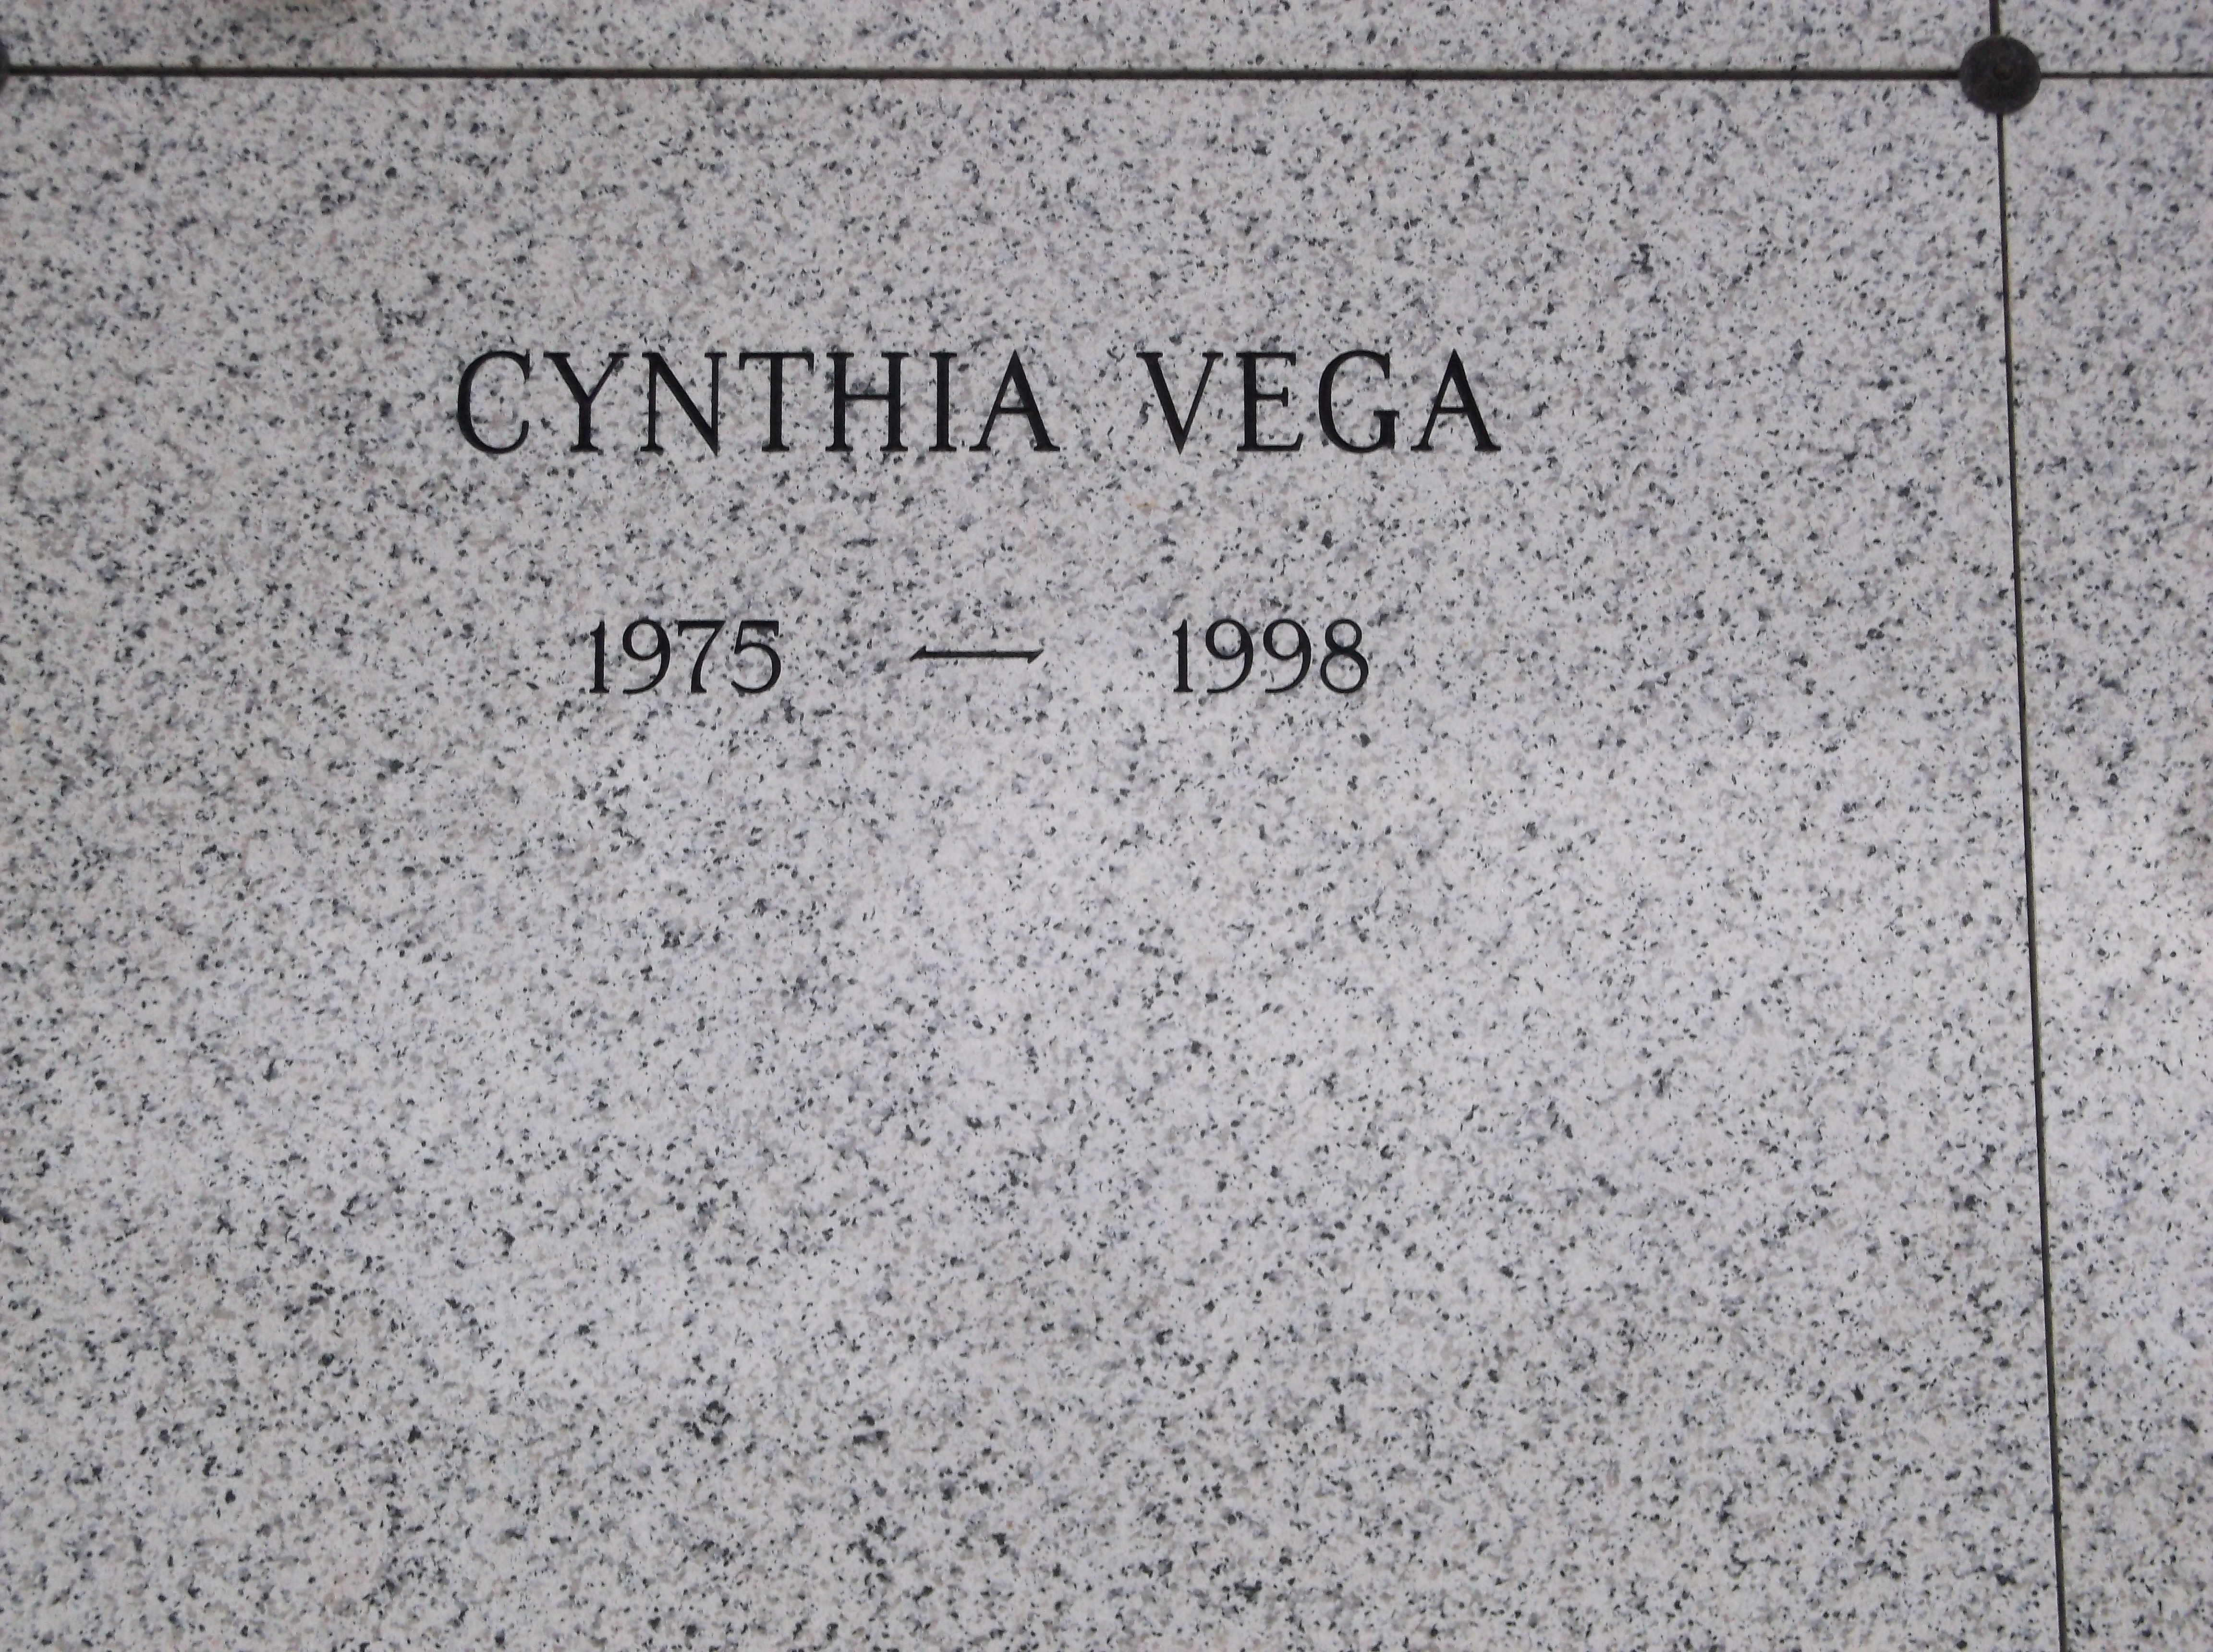 Cynthia Vega